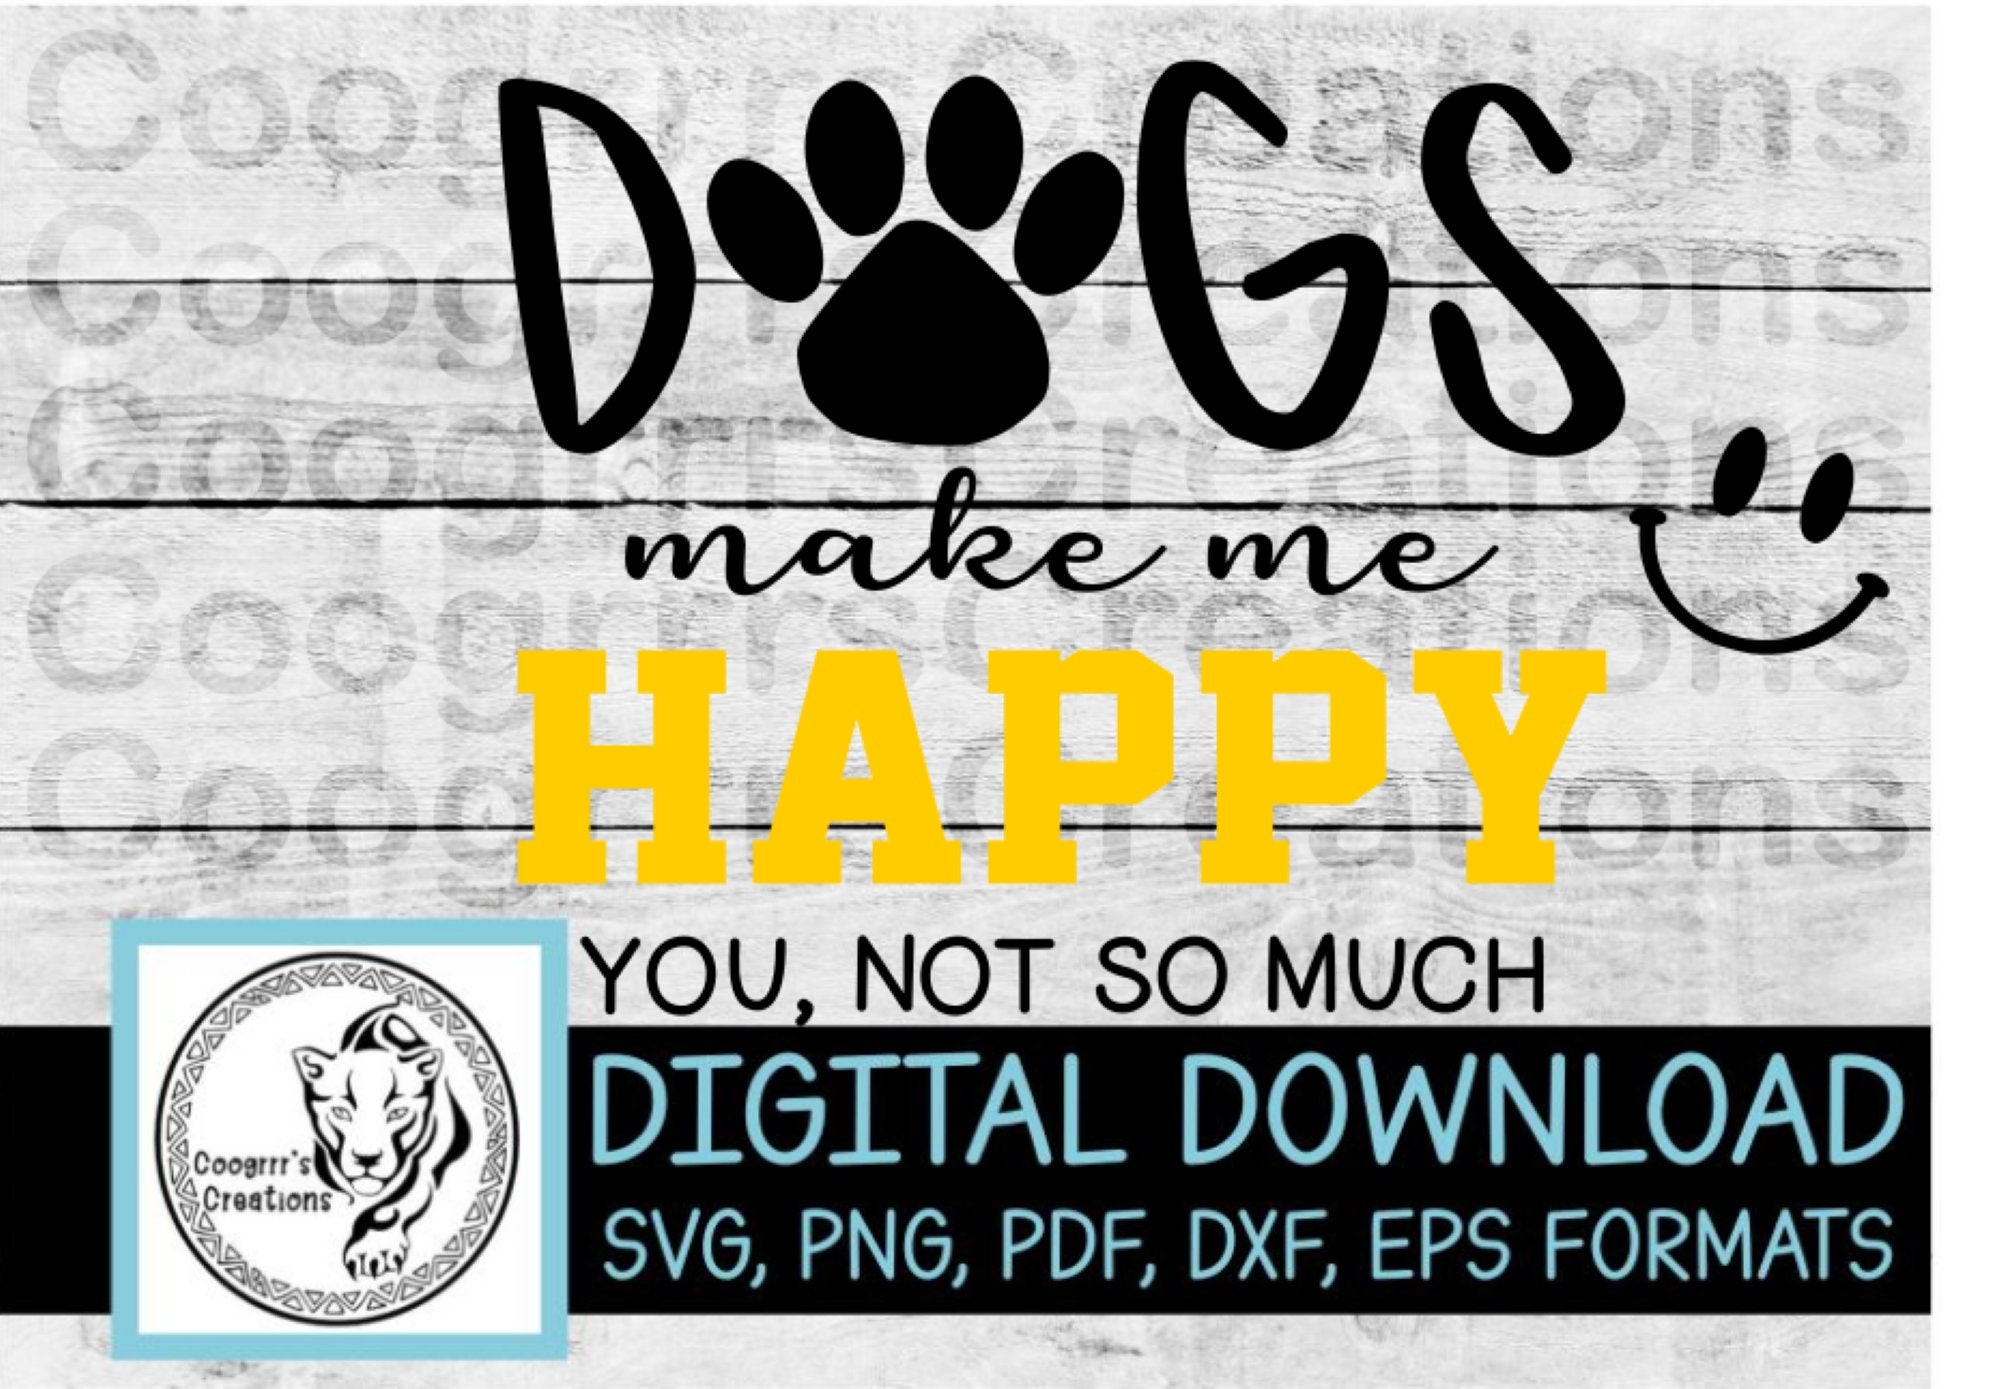 Dogs make me happy svg Dogs svg Dog svg Dogs make me | Etsy